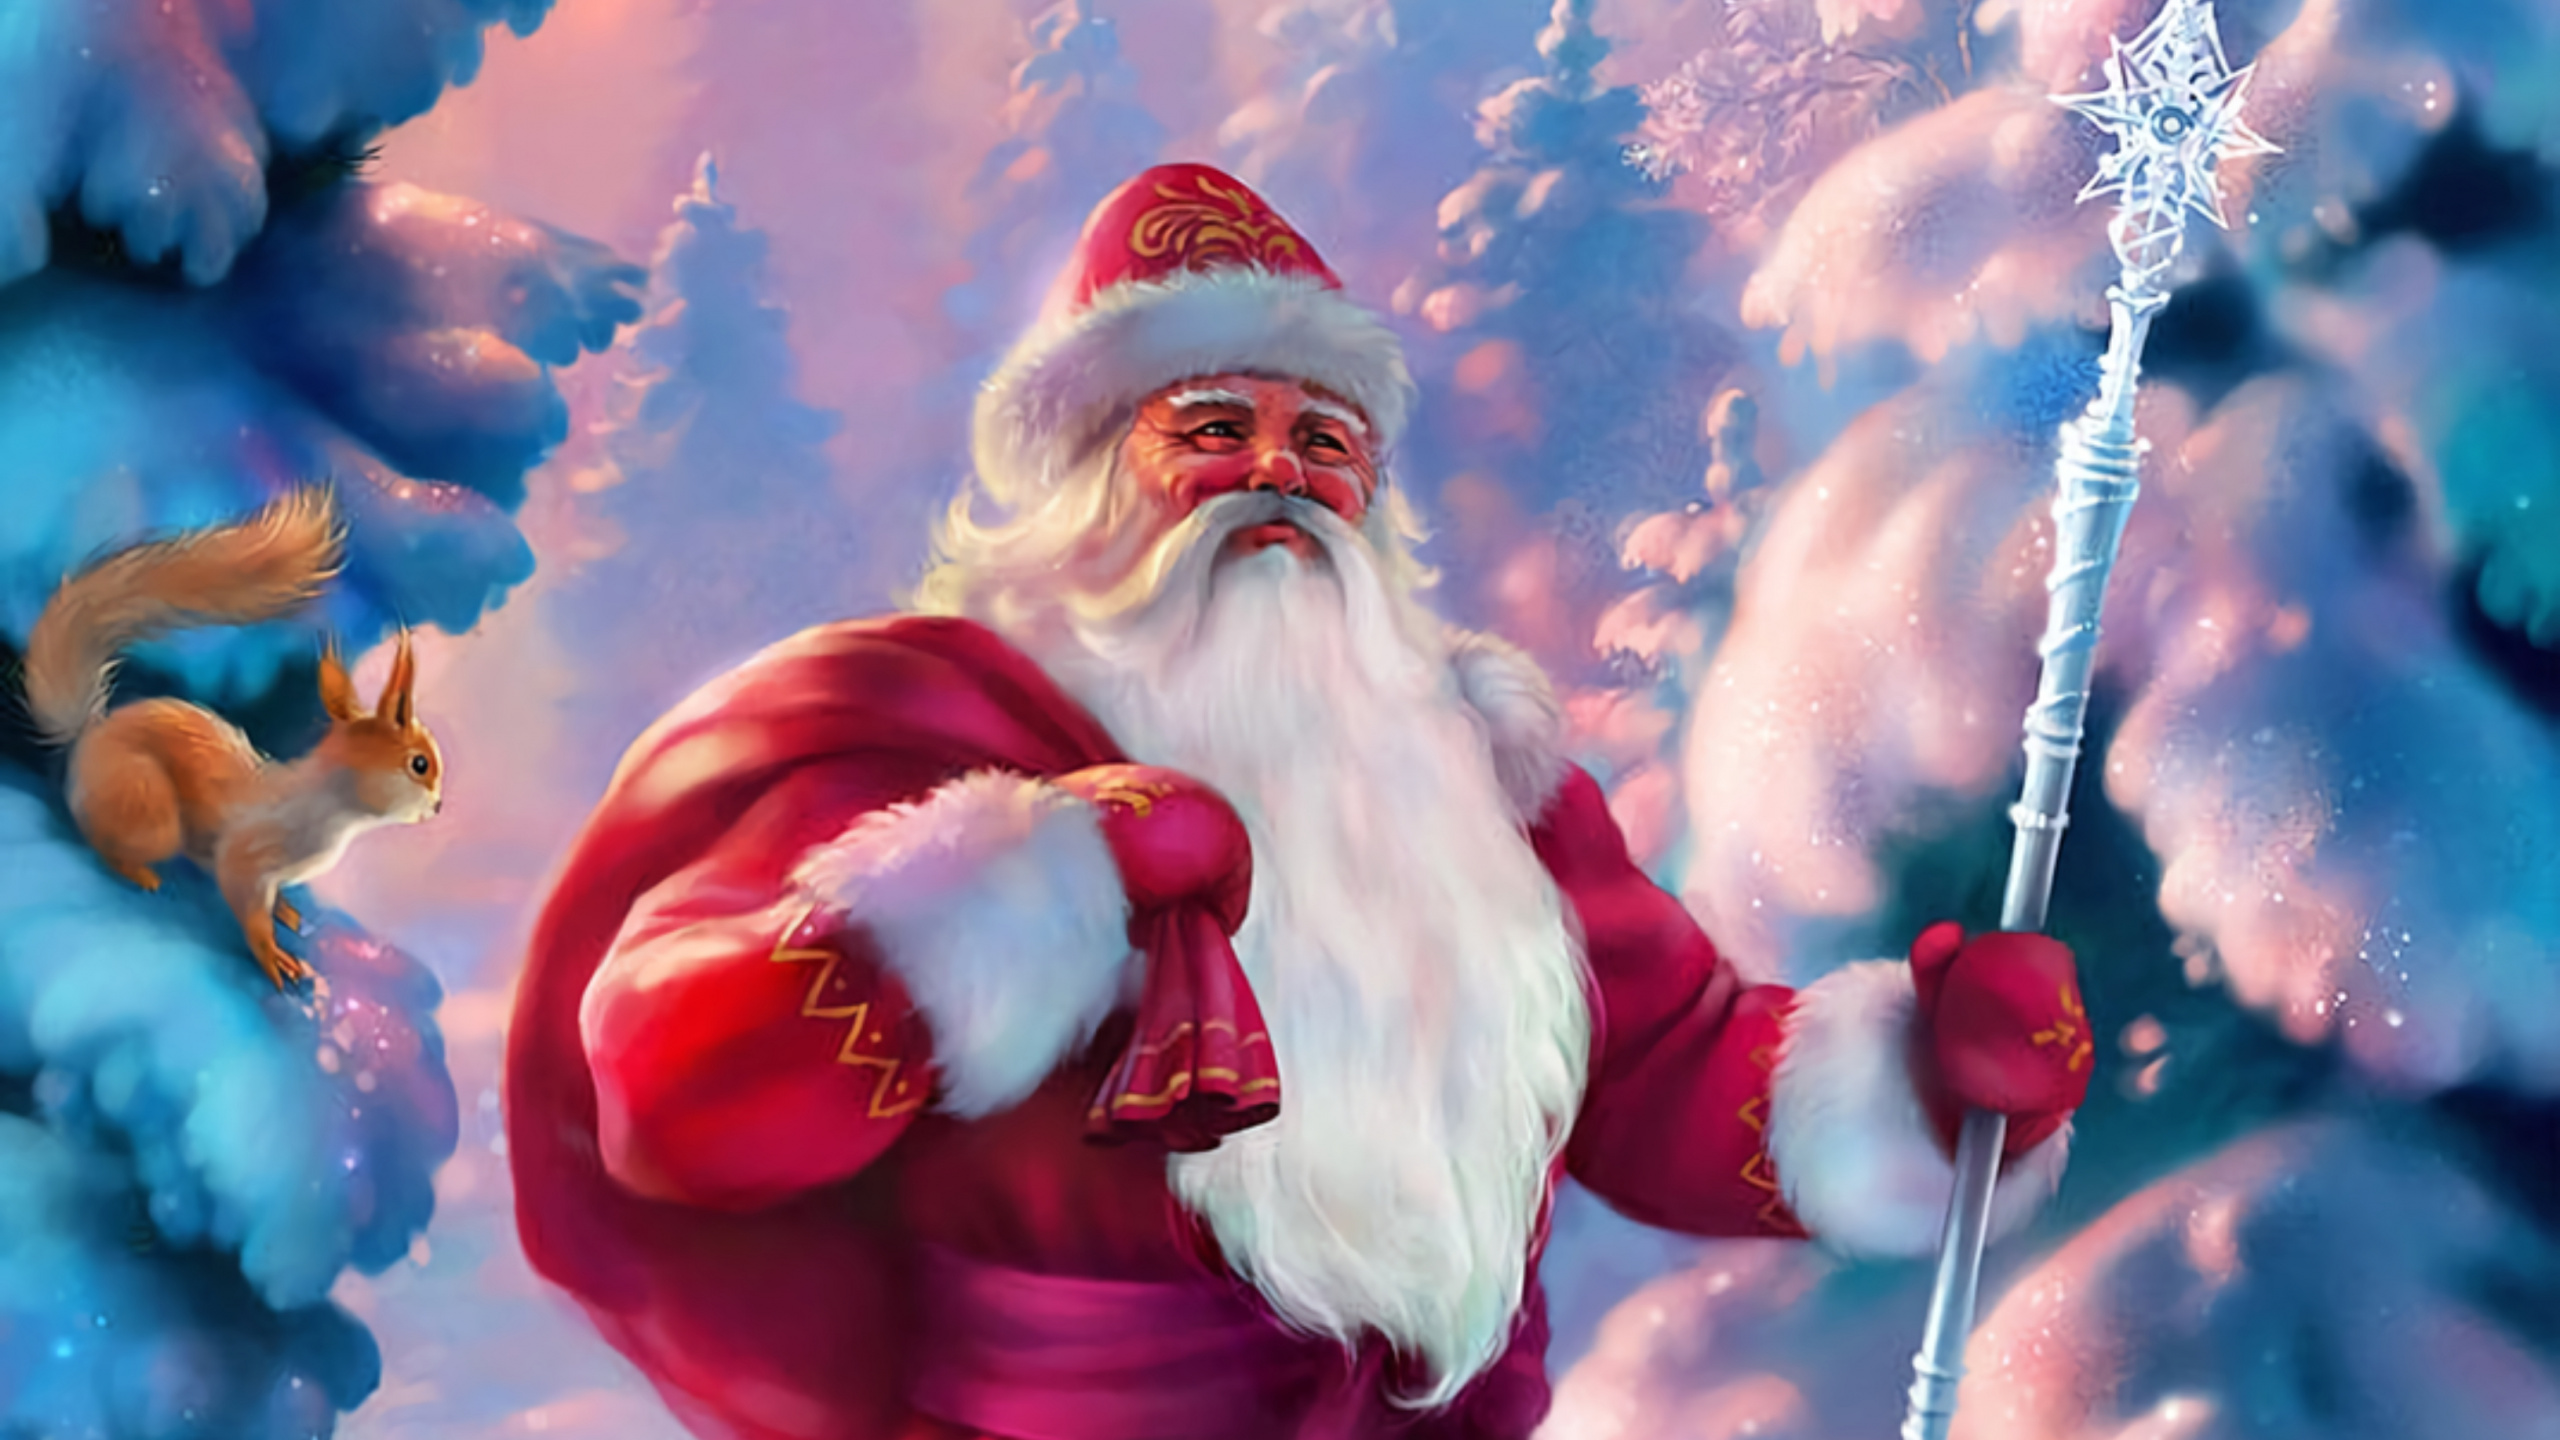 Weihnachtsmann, Ded Moroz, Weihnachten, Animation, Pink. Wallpaper in 2560x1440 Resolution